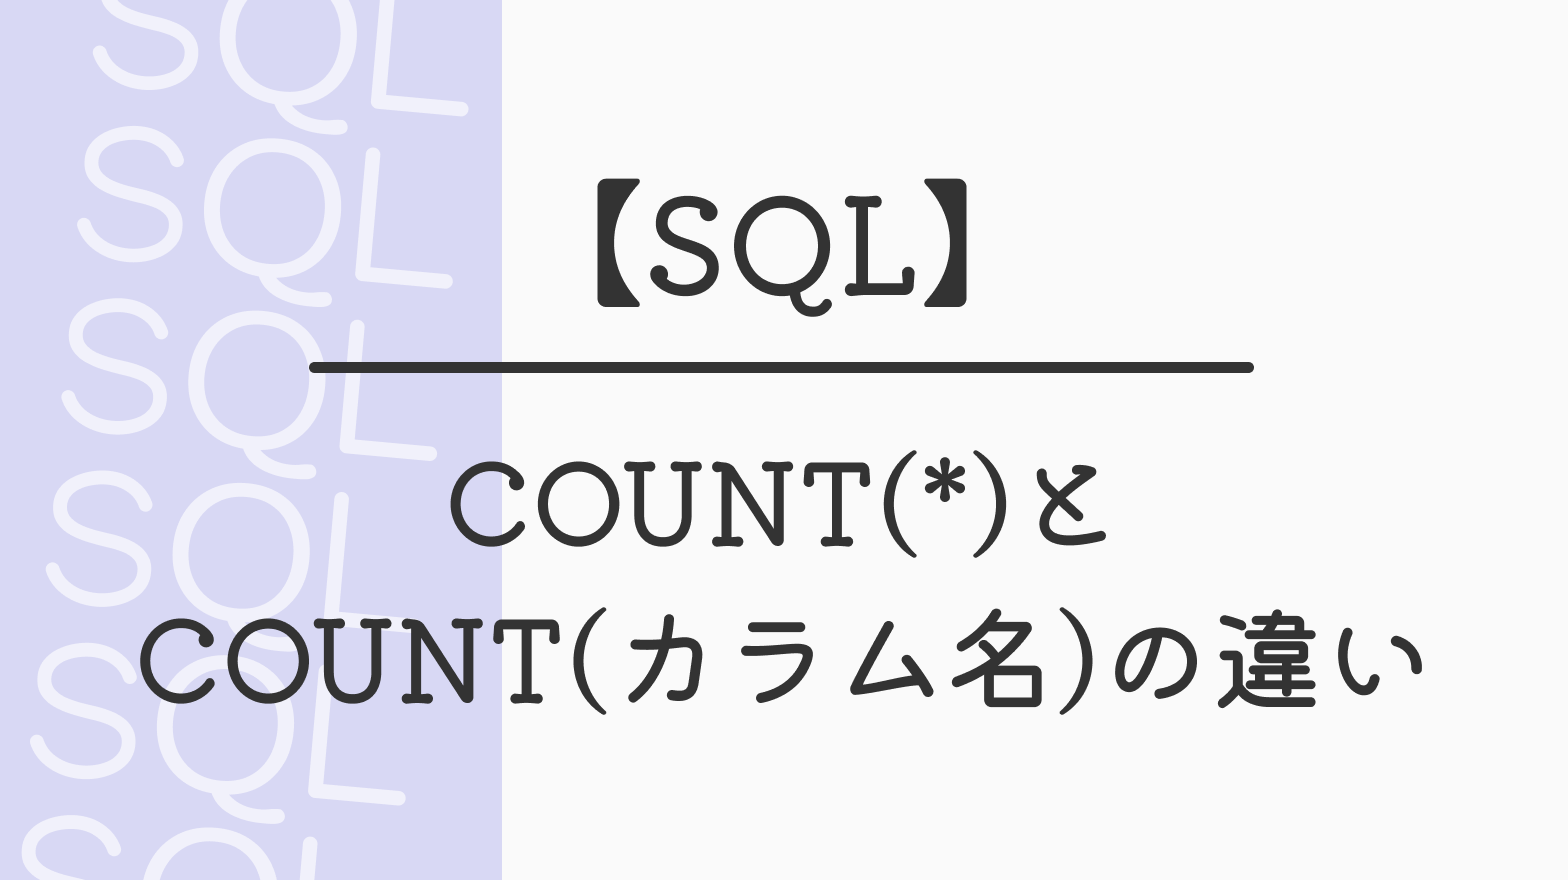 【SQL】COUNT(*)と COUNT(カラム名)の違い